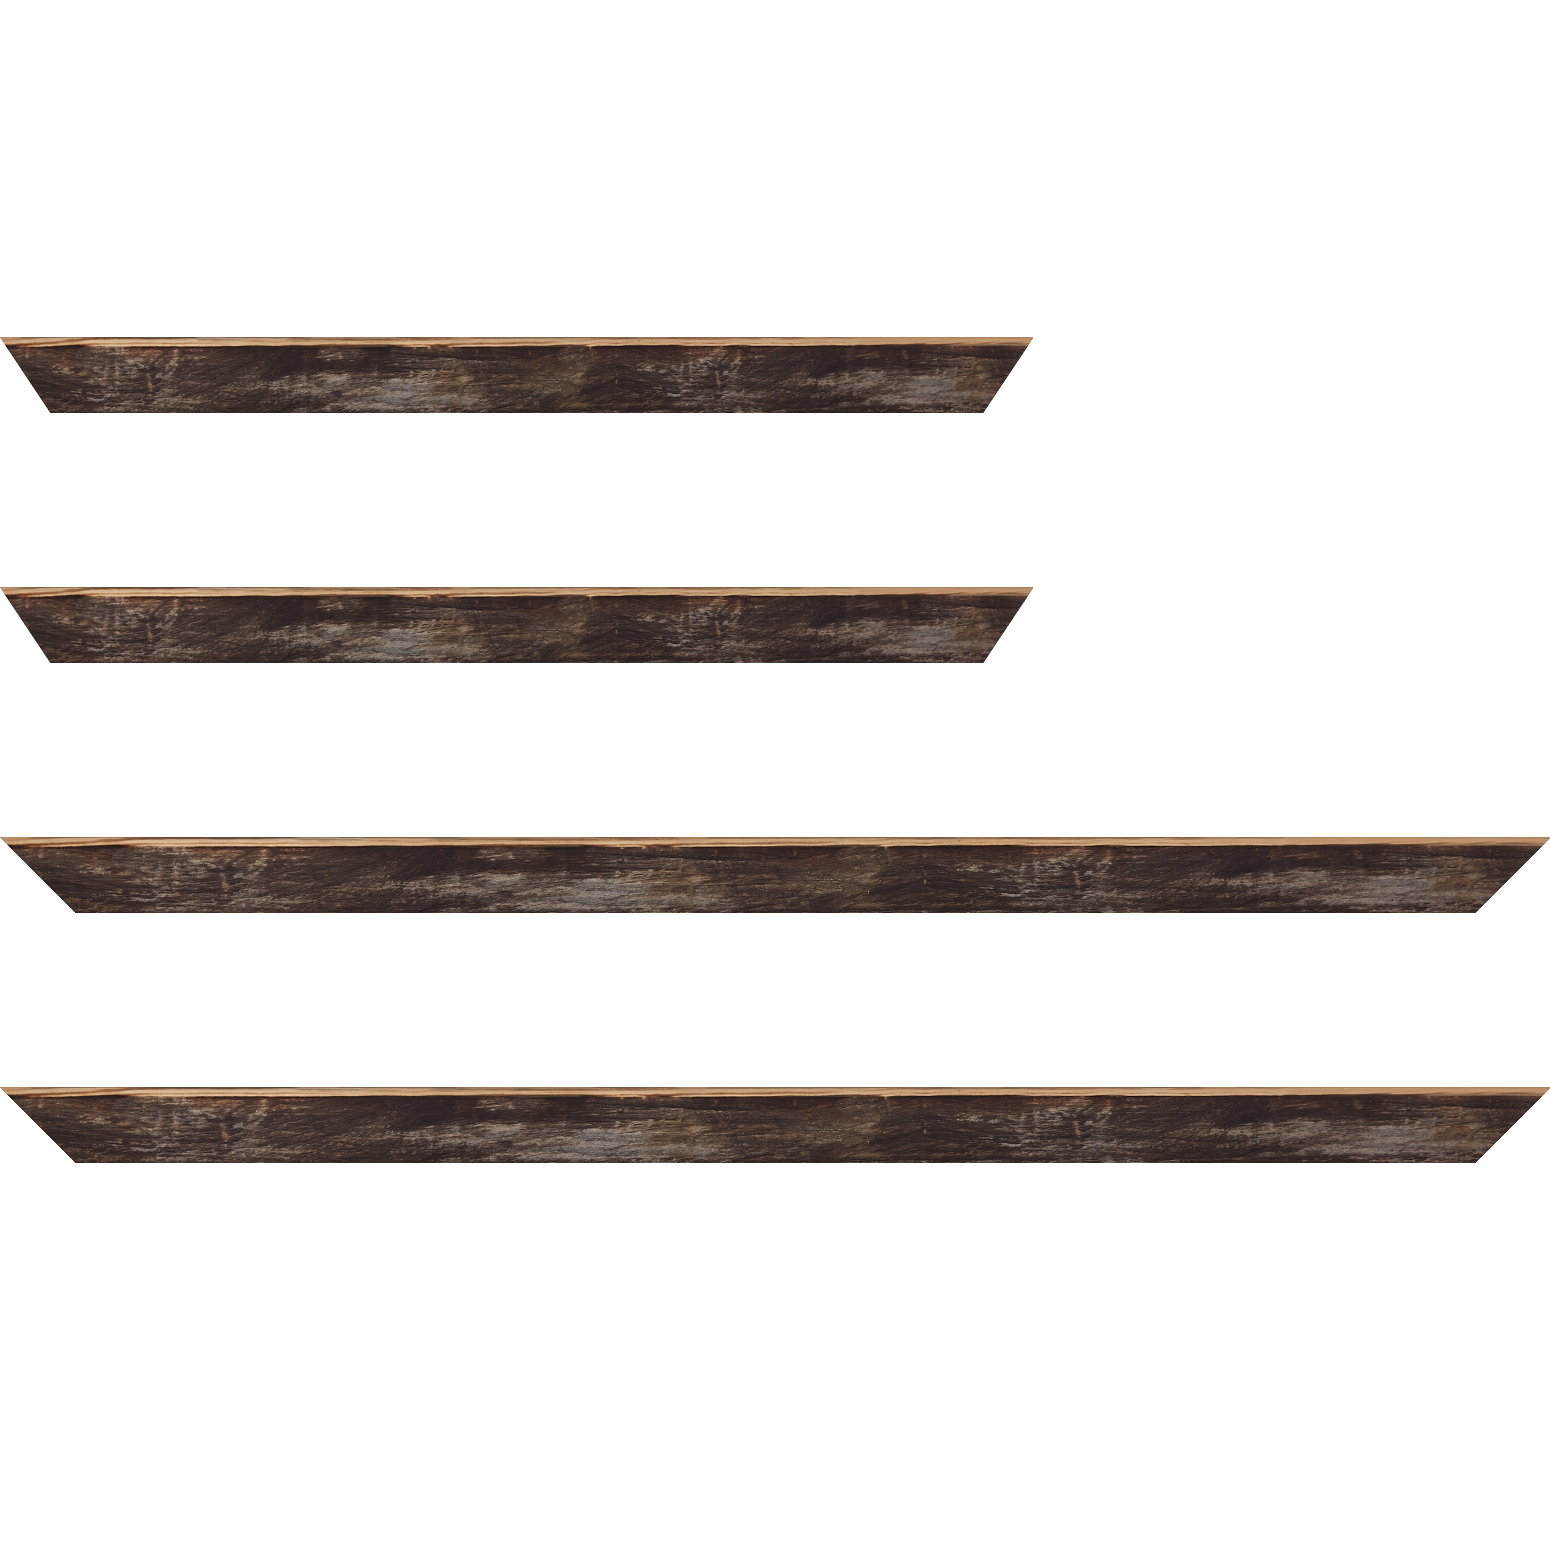 Baguette bois profil arrondi en pente plongeant largeur 2.4cm couleur noir ébène effet ressuyé, angle du cadre extérieur filet naturel - 70x100